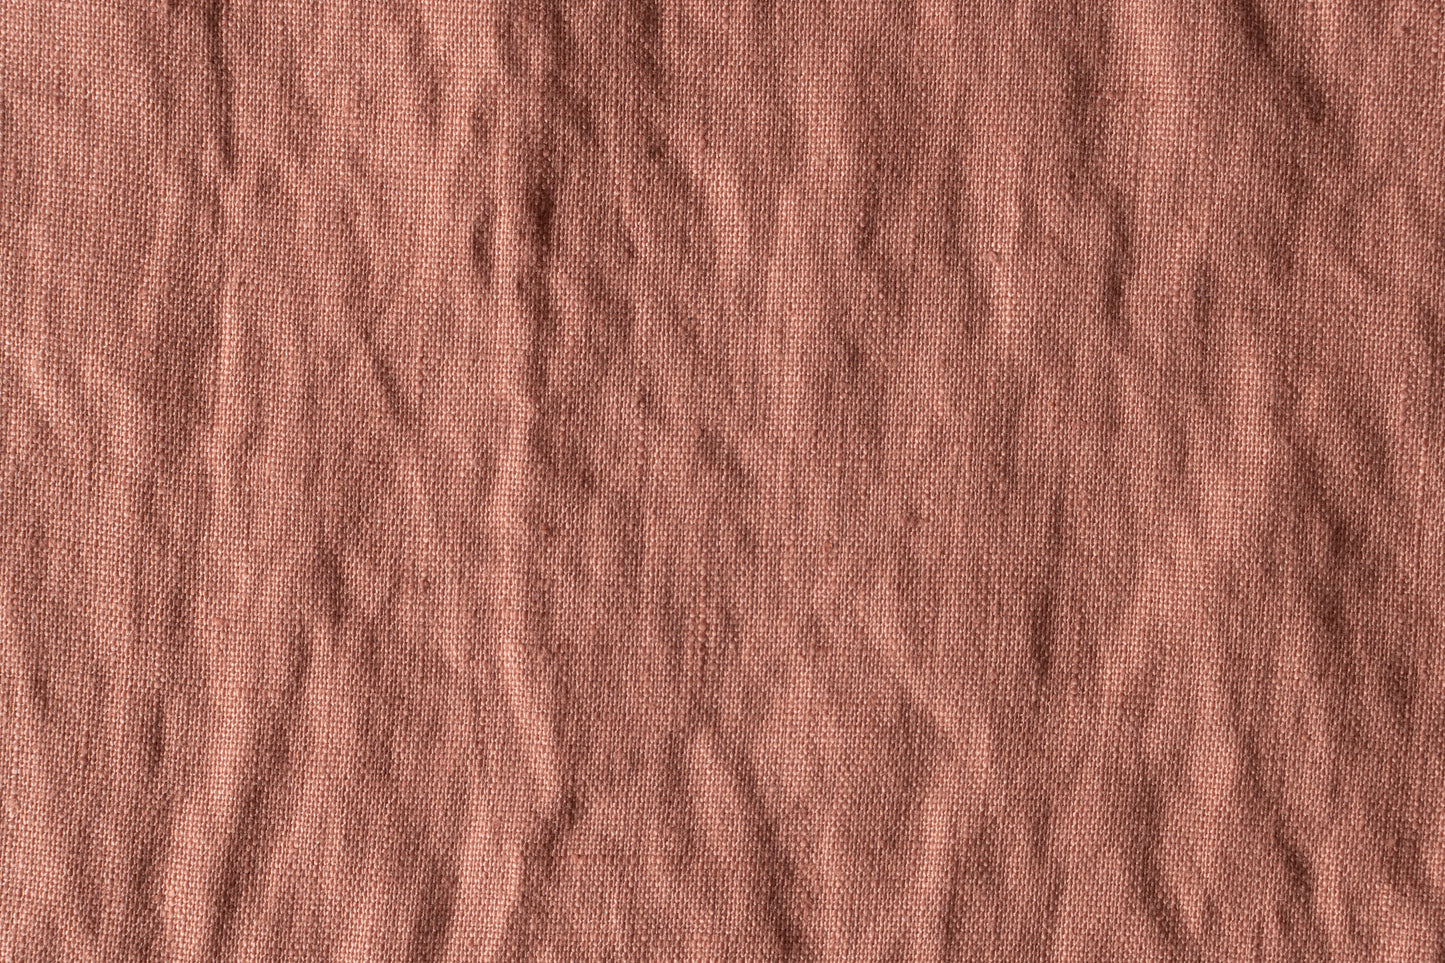 Medium Weight Fabric by the Yard Red (5.5 Oz/Sq Yard)